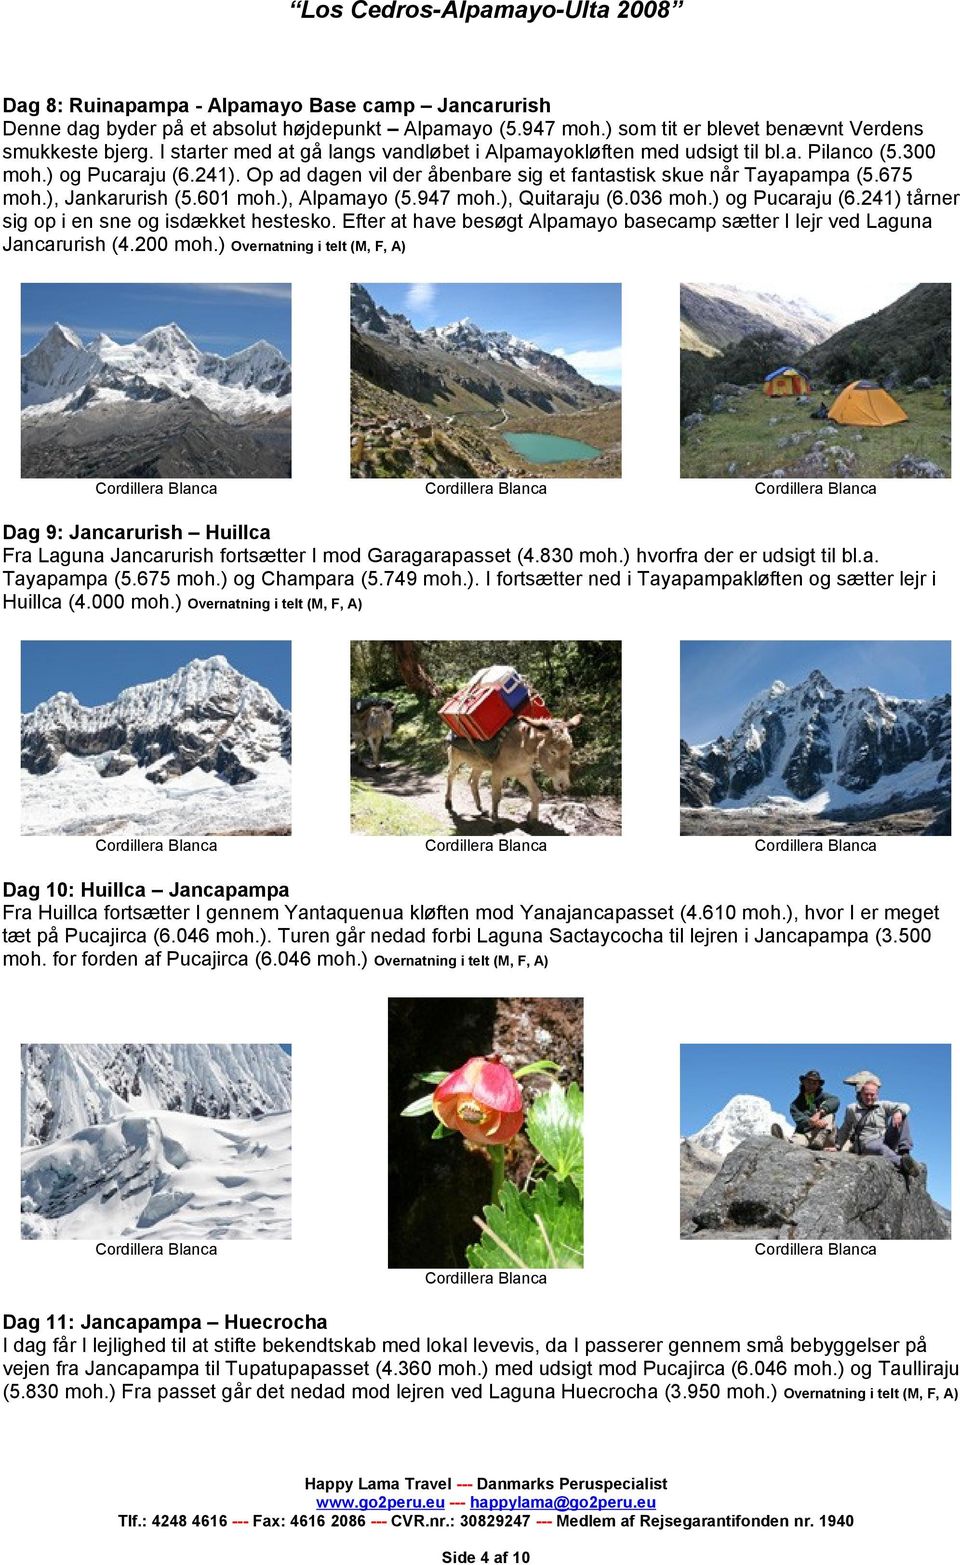 ), Jankarurish (5.601 moh.), Alpamayo (5.947 moh.), Quitaraju (6.036 moh.) og Pucaraju (6.241) tårner sig op i en sne og isdækket hestesko.